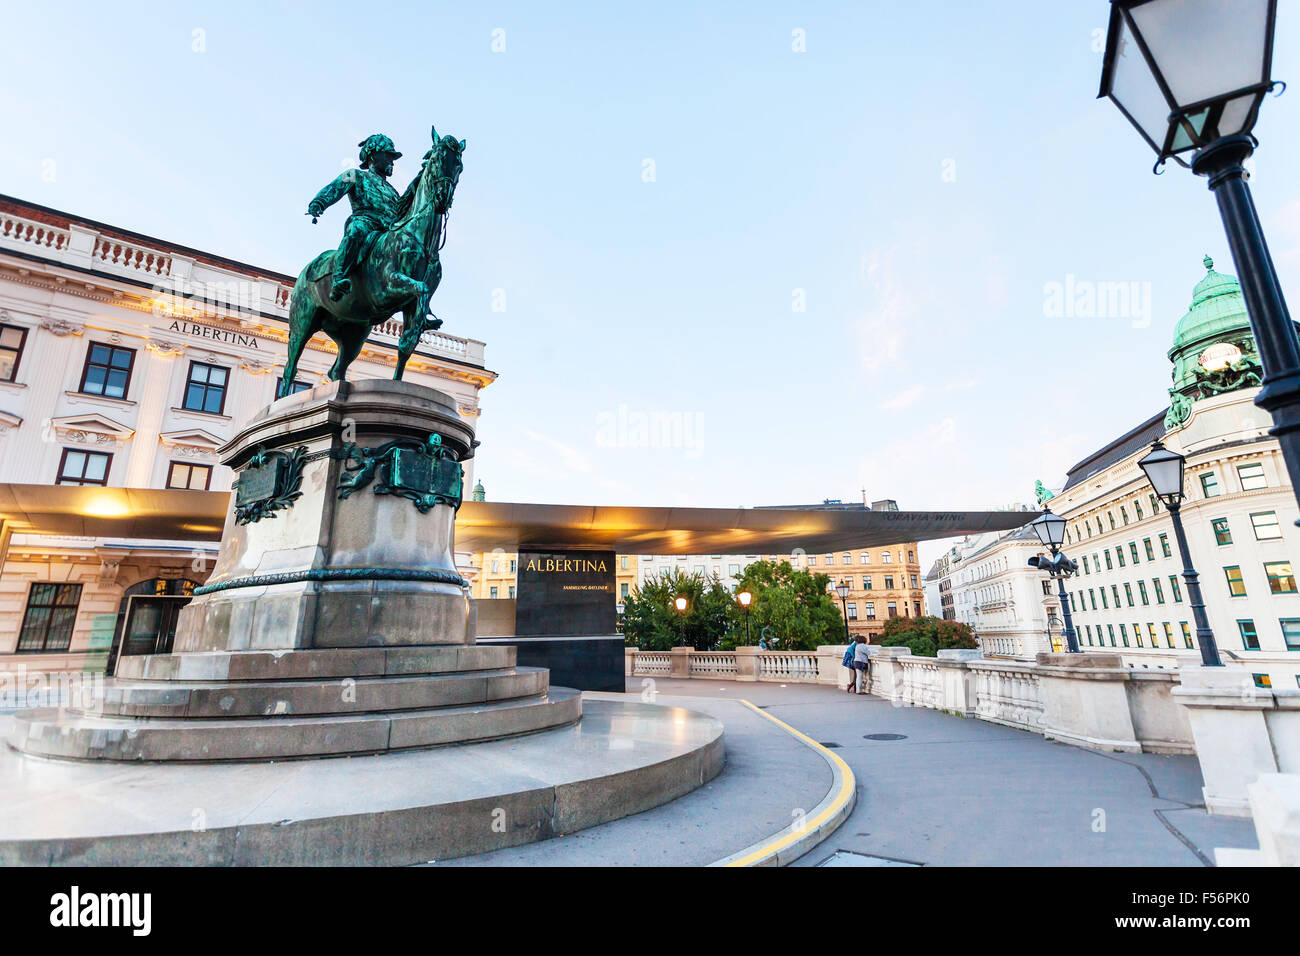 VIENNA, Austria - 28 settembre 2015: Franz Joseph I statua vicino al Museo Albertina di Vienna. Albertina è uno dei più importanti ga Foto Stock